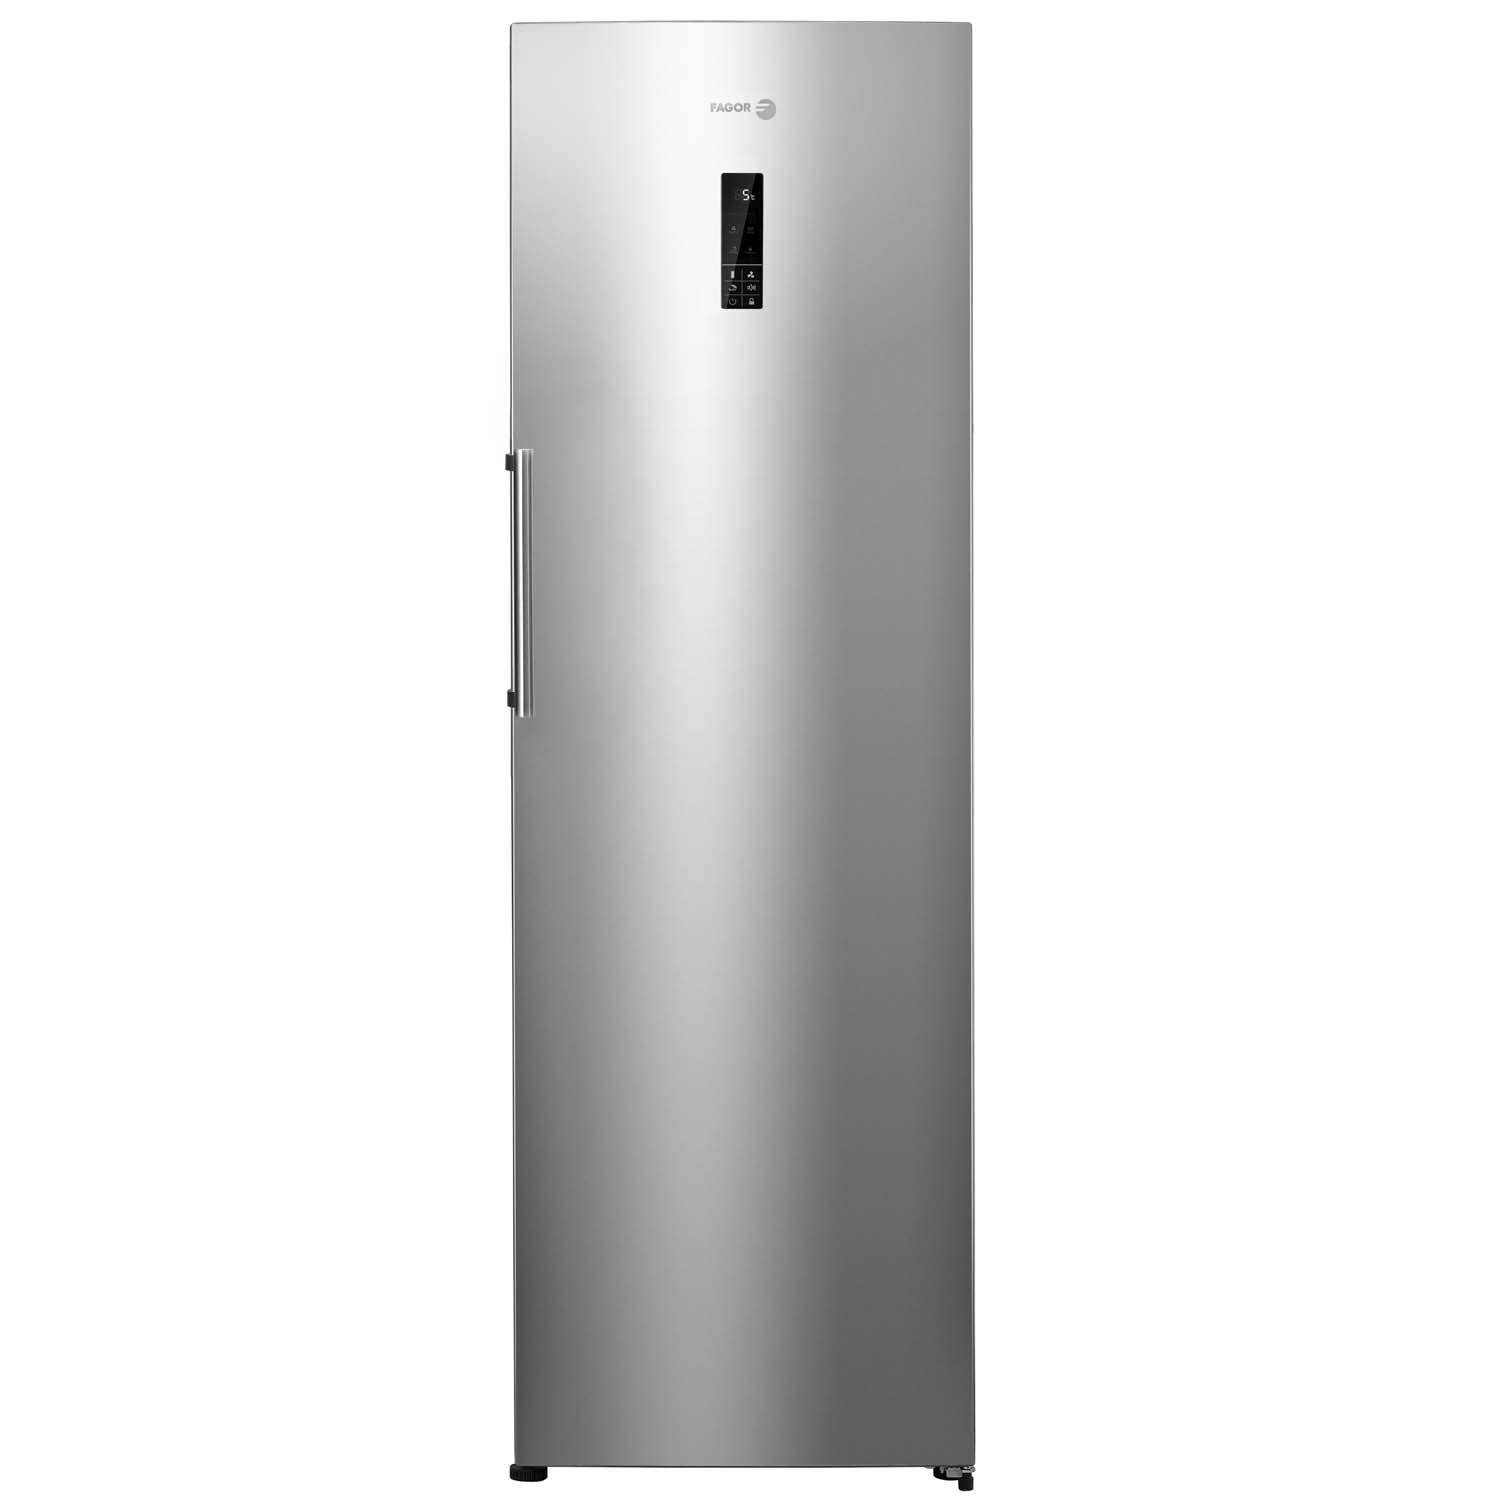 Хладилник Fagor FFK-1677AX с обем от 388 л.